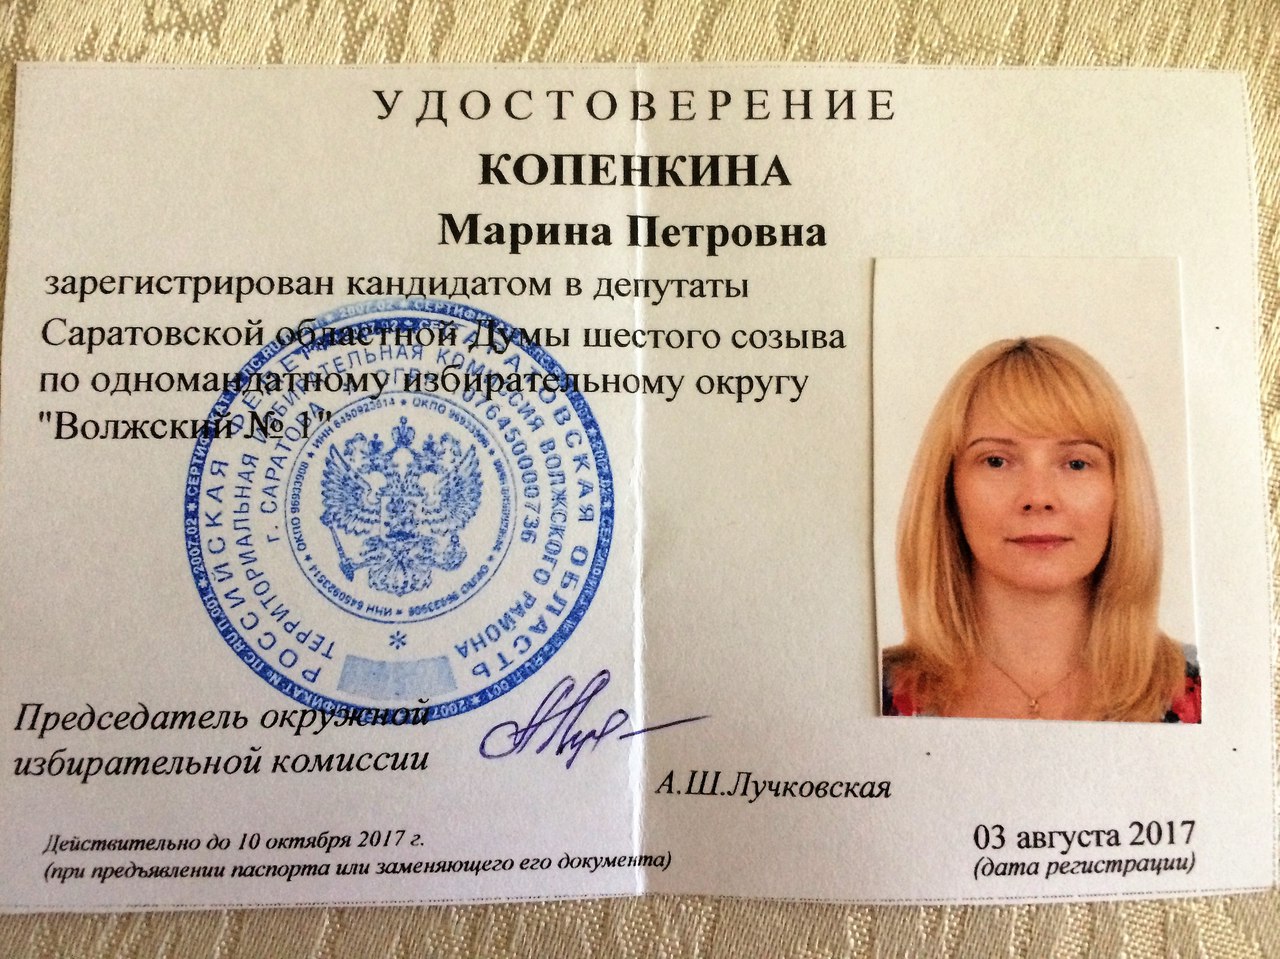 2 Копенкина Марина Петровна, зарегистрирована кандидатом в депутаты Саратовско.jpg